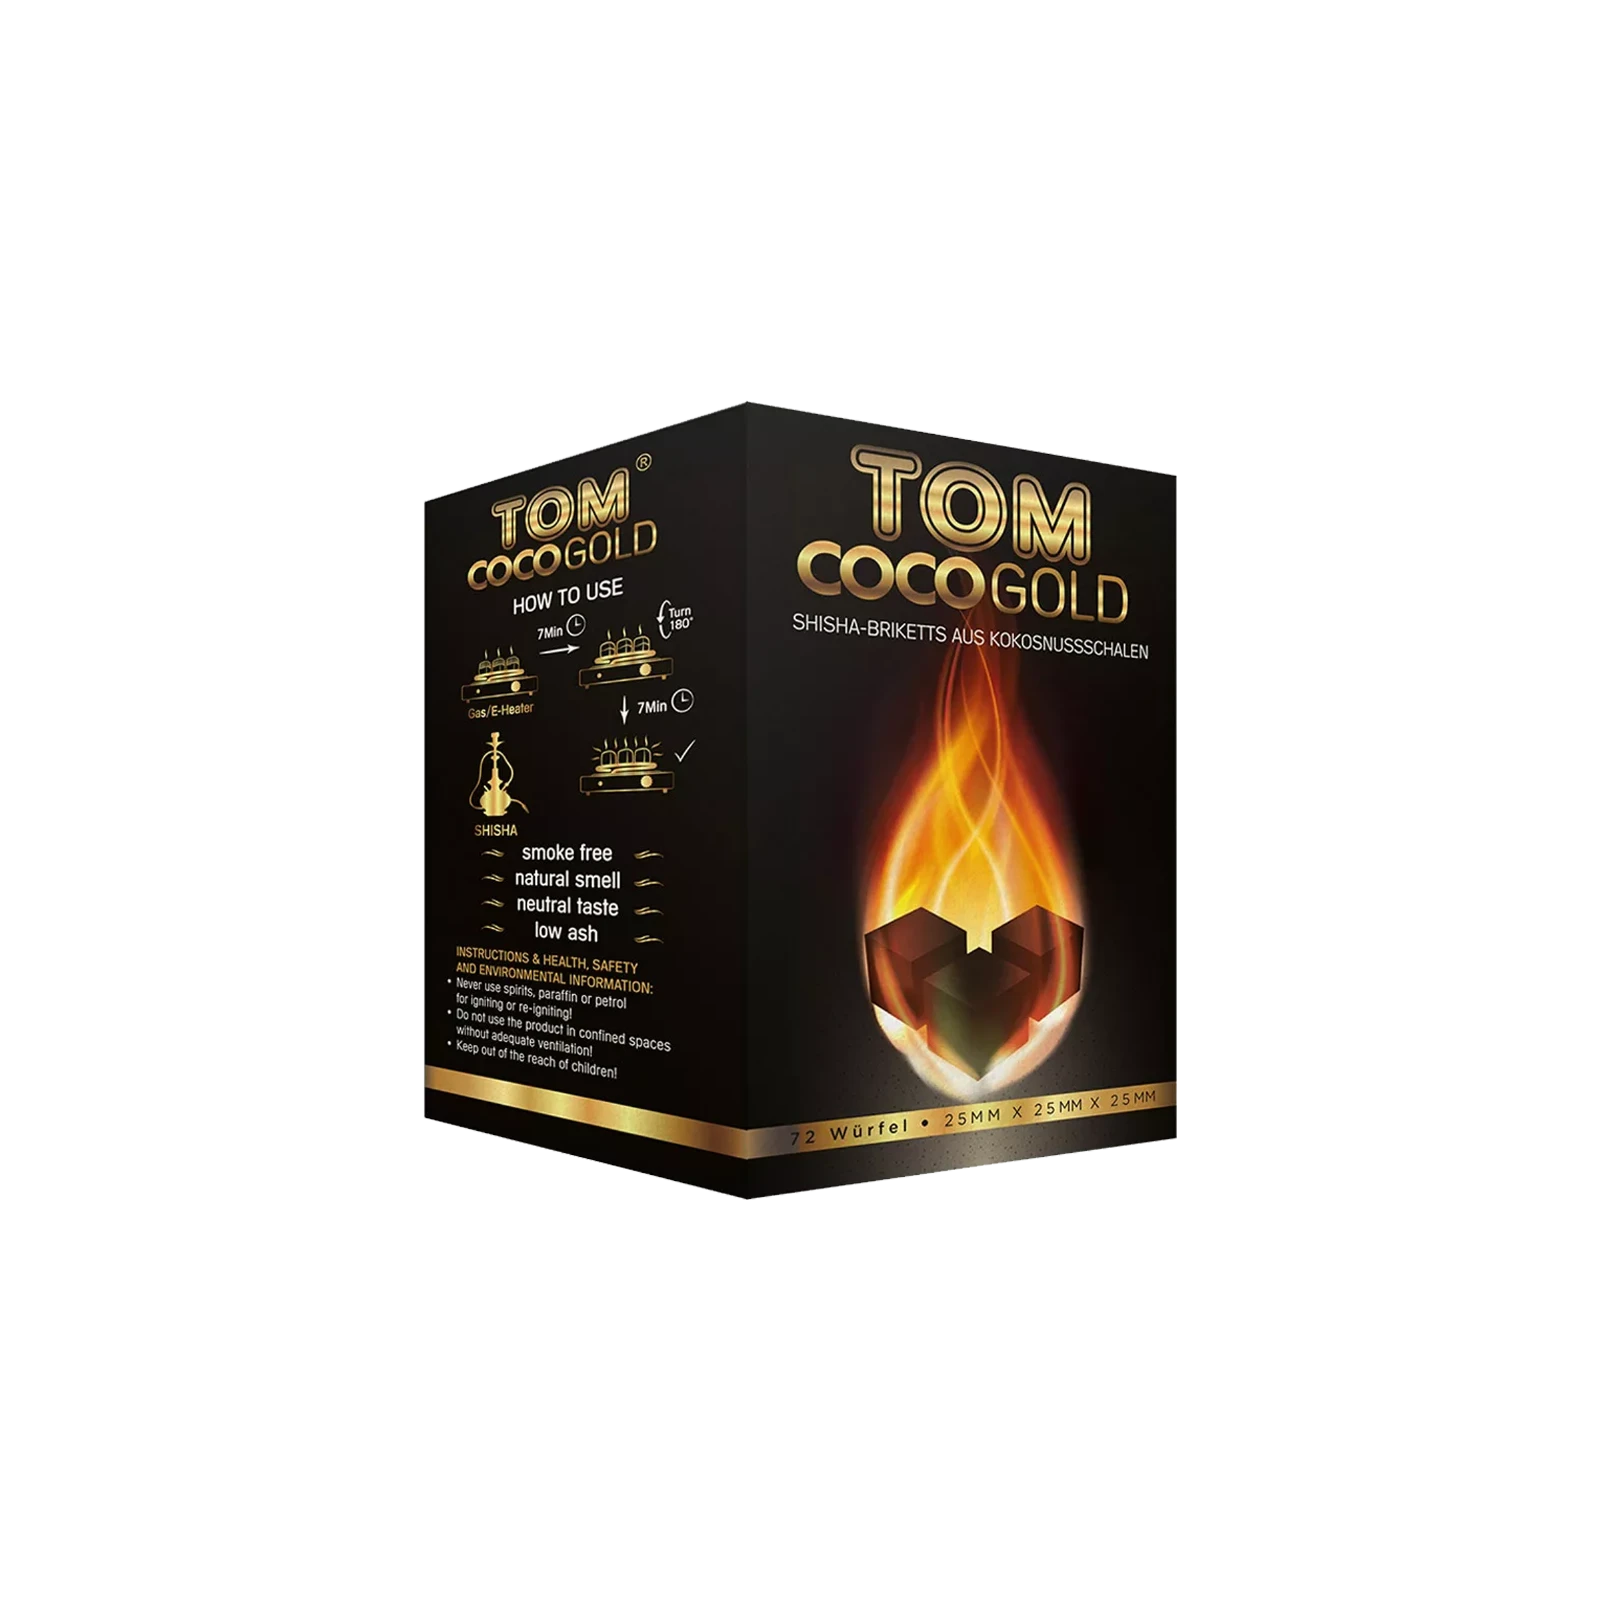 Tom Coco - Gold - Shishakohle C25 Bundle - 20 kg - 25 mm 222